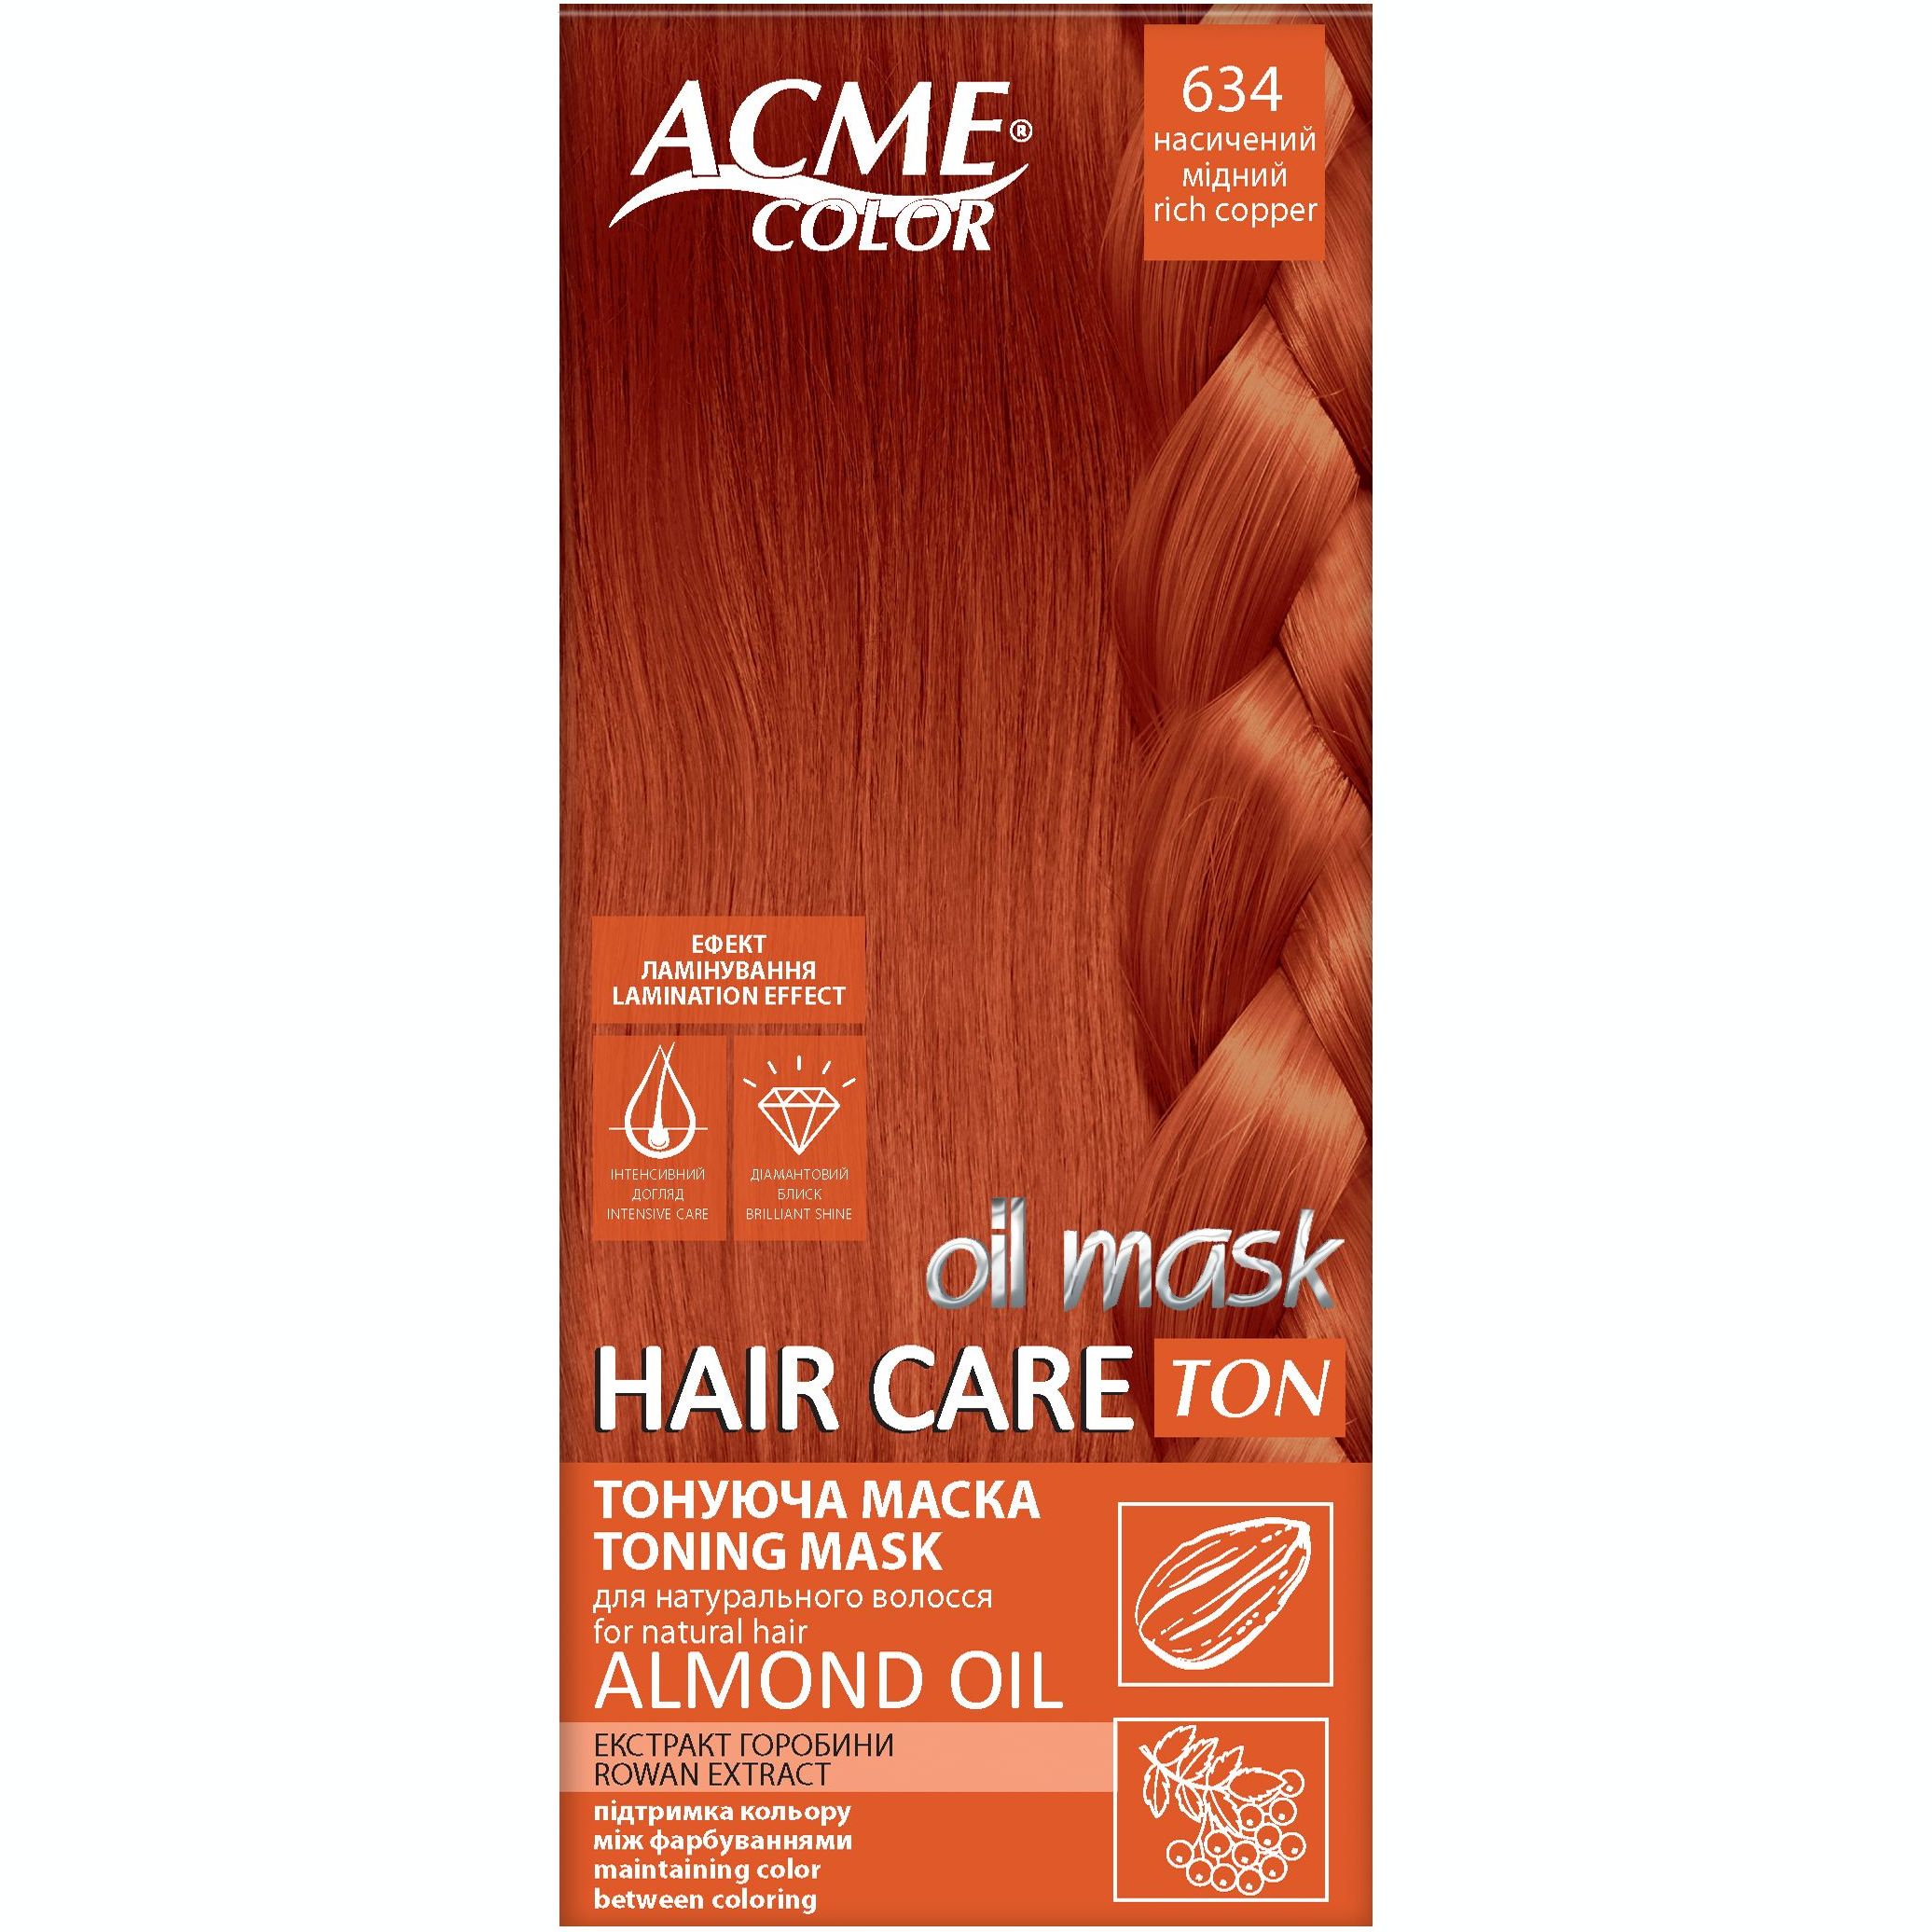 Тонирующая маска для волос Acme Color Hair Care Ton oil mask, тон 634, насыщенный медный, 30 мл - фото 1